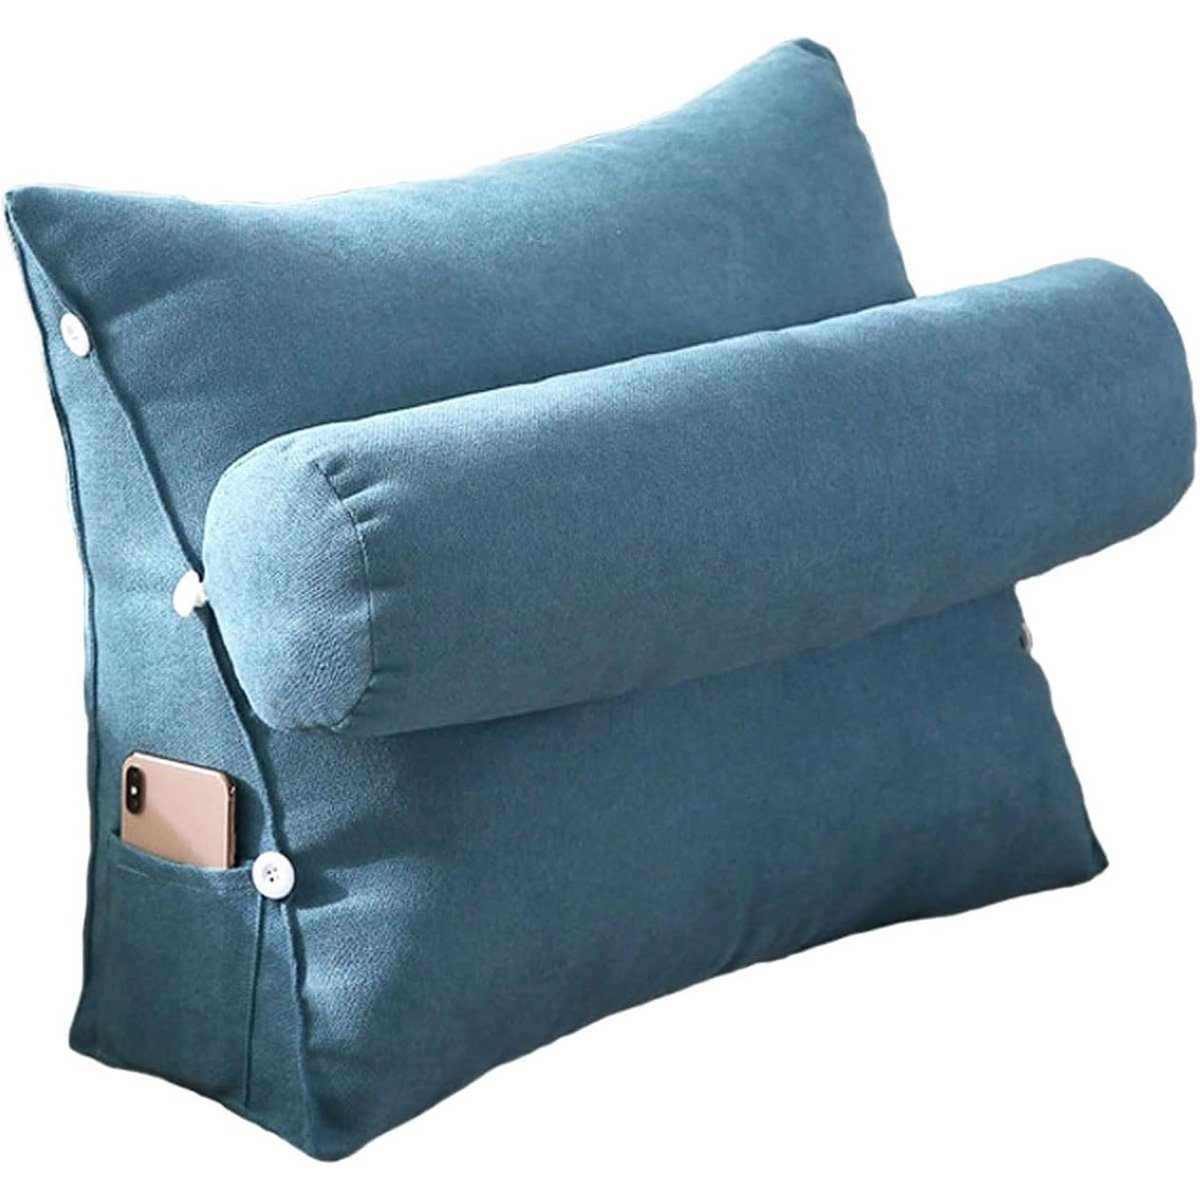 götäzer Rückenkissen Dreieckiges Kissen und Mit Bett-Nackenkissen (45 cm) Nachttischkissen, als Seitentaschen, Rückenlehne Blau